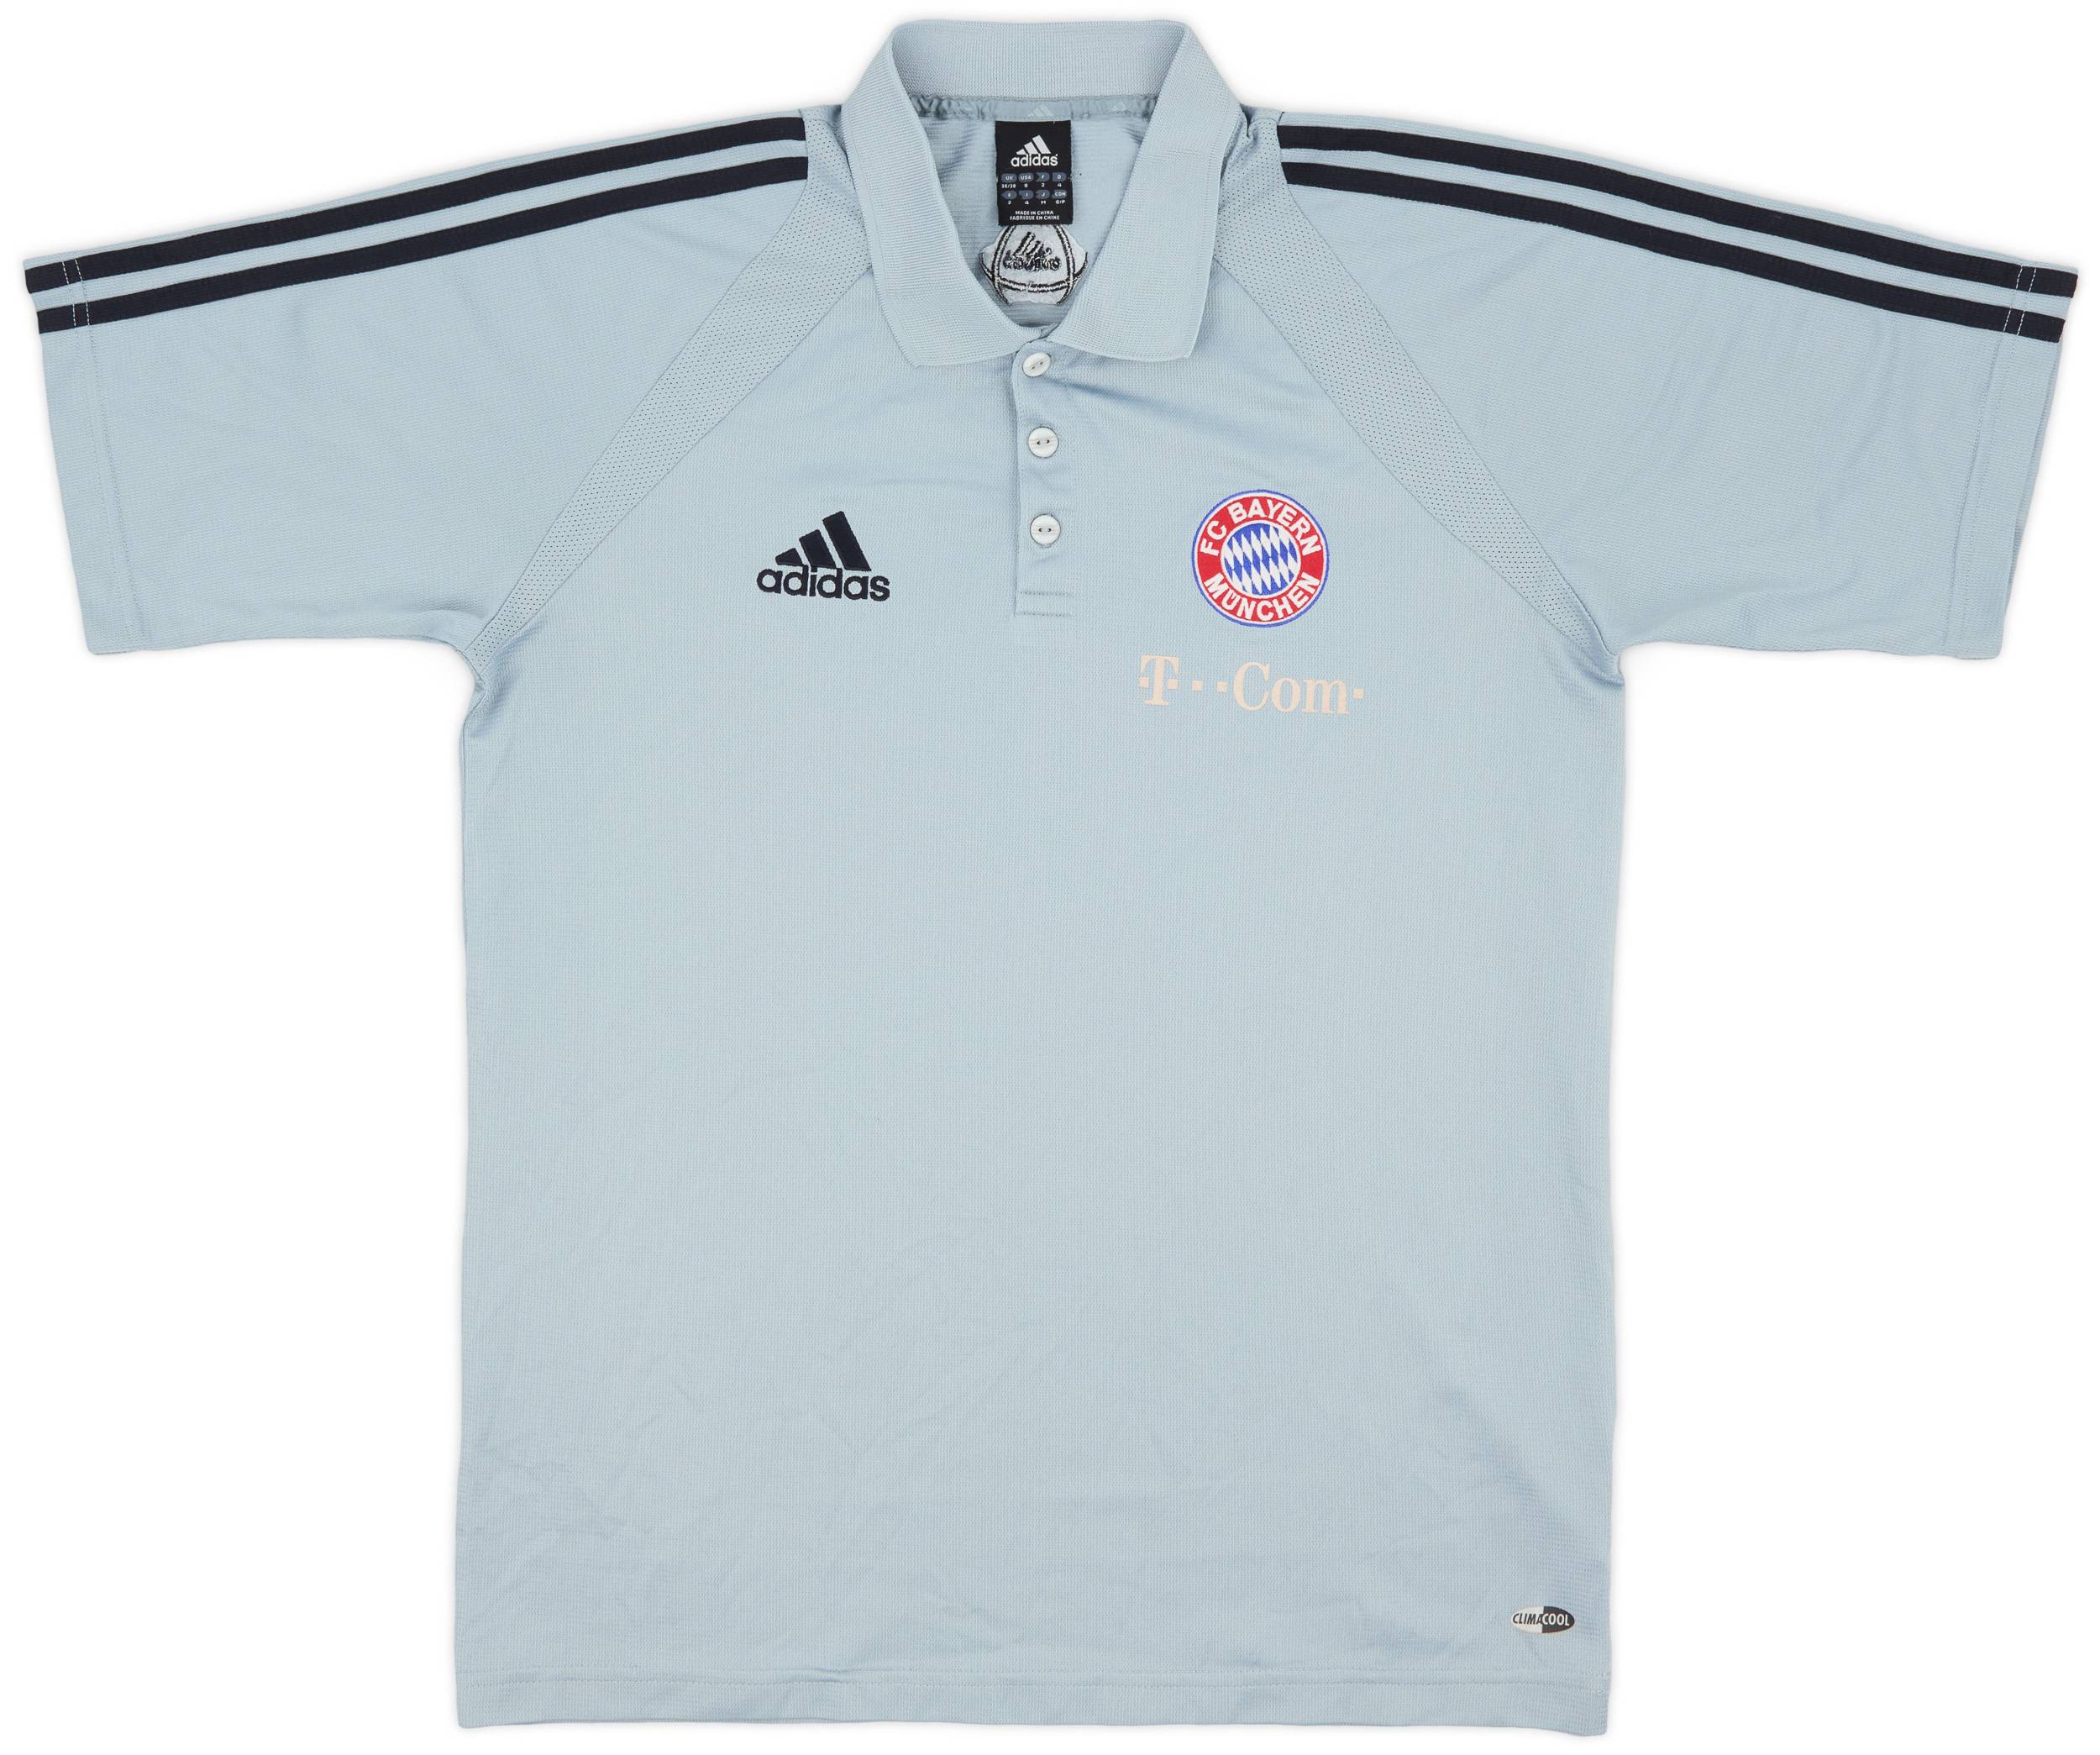 2004-05 Bayern Munich adidas Polo Shirt - 6/10 - (S)